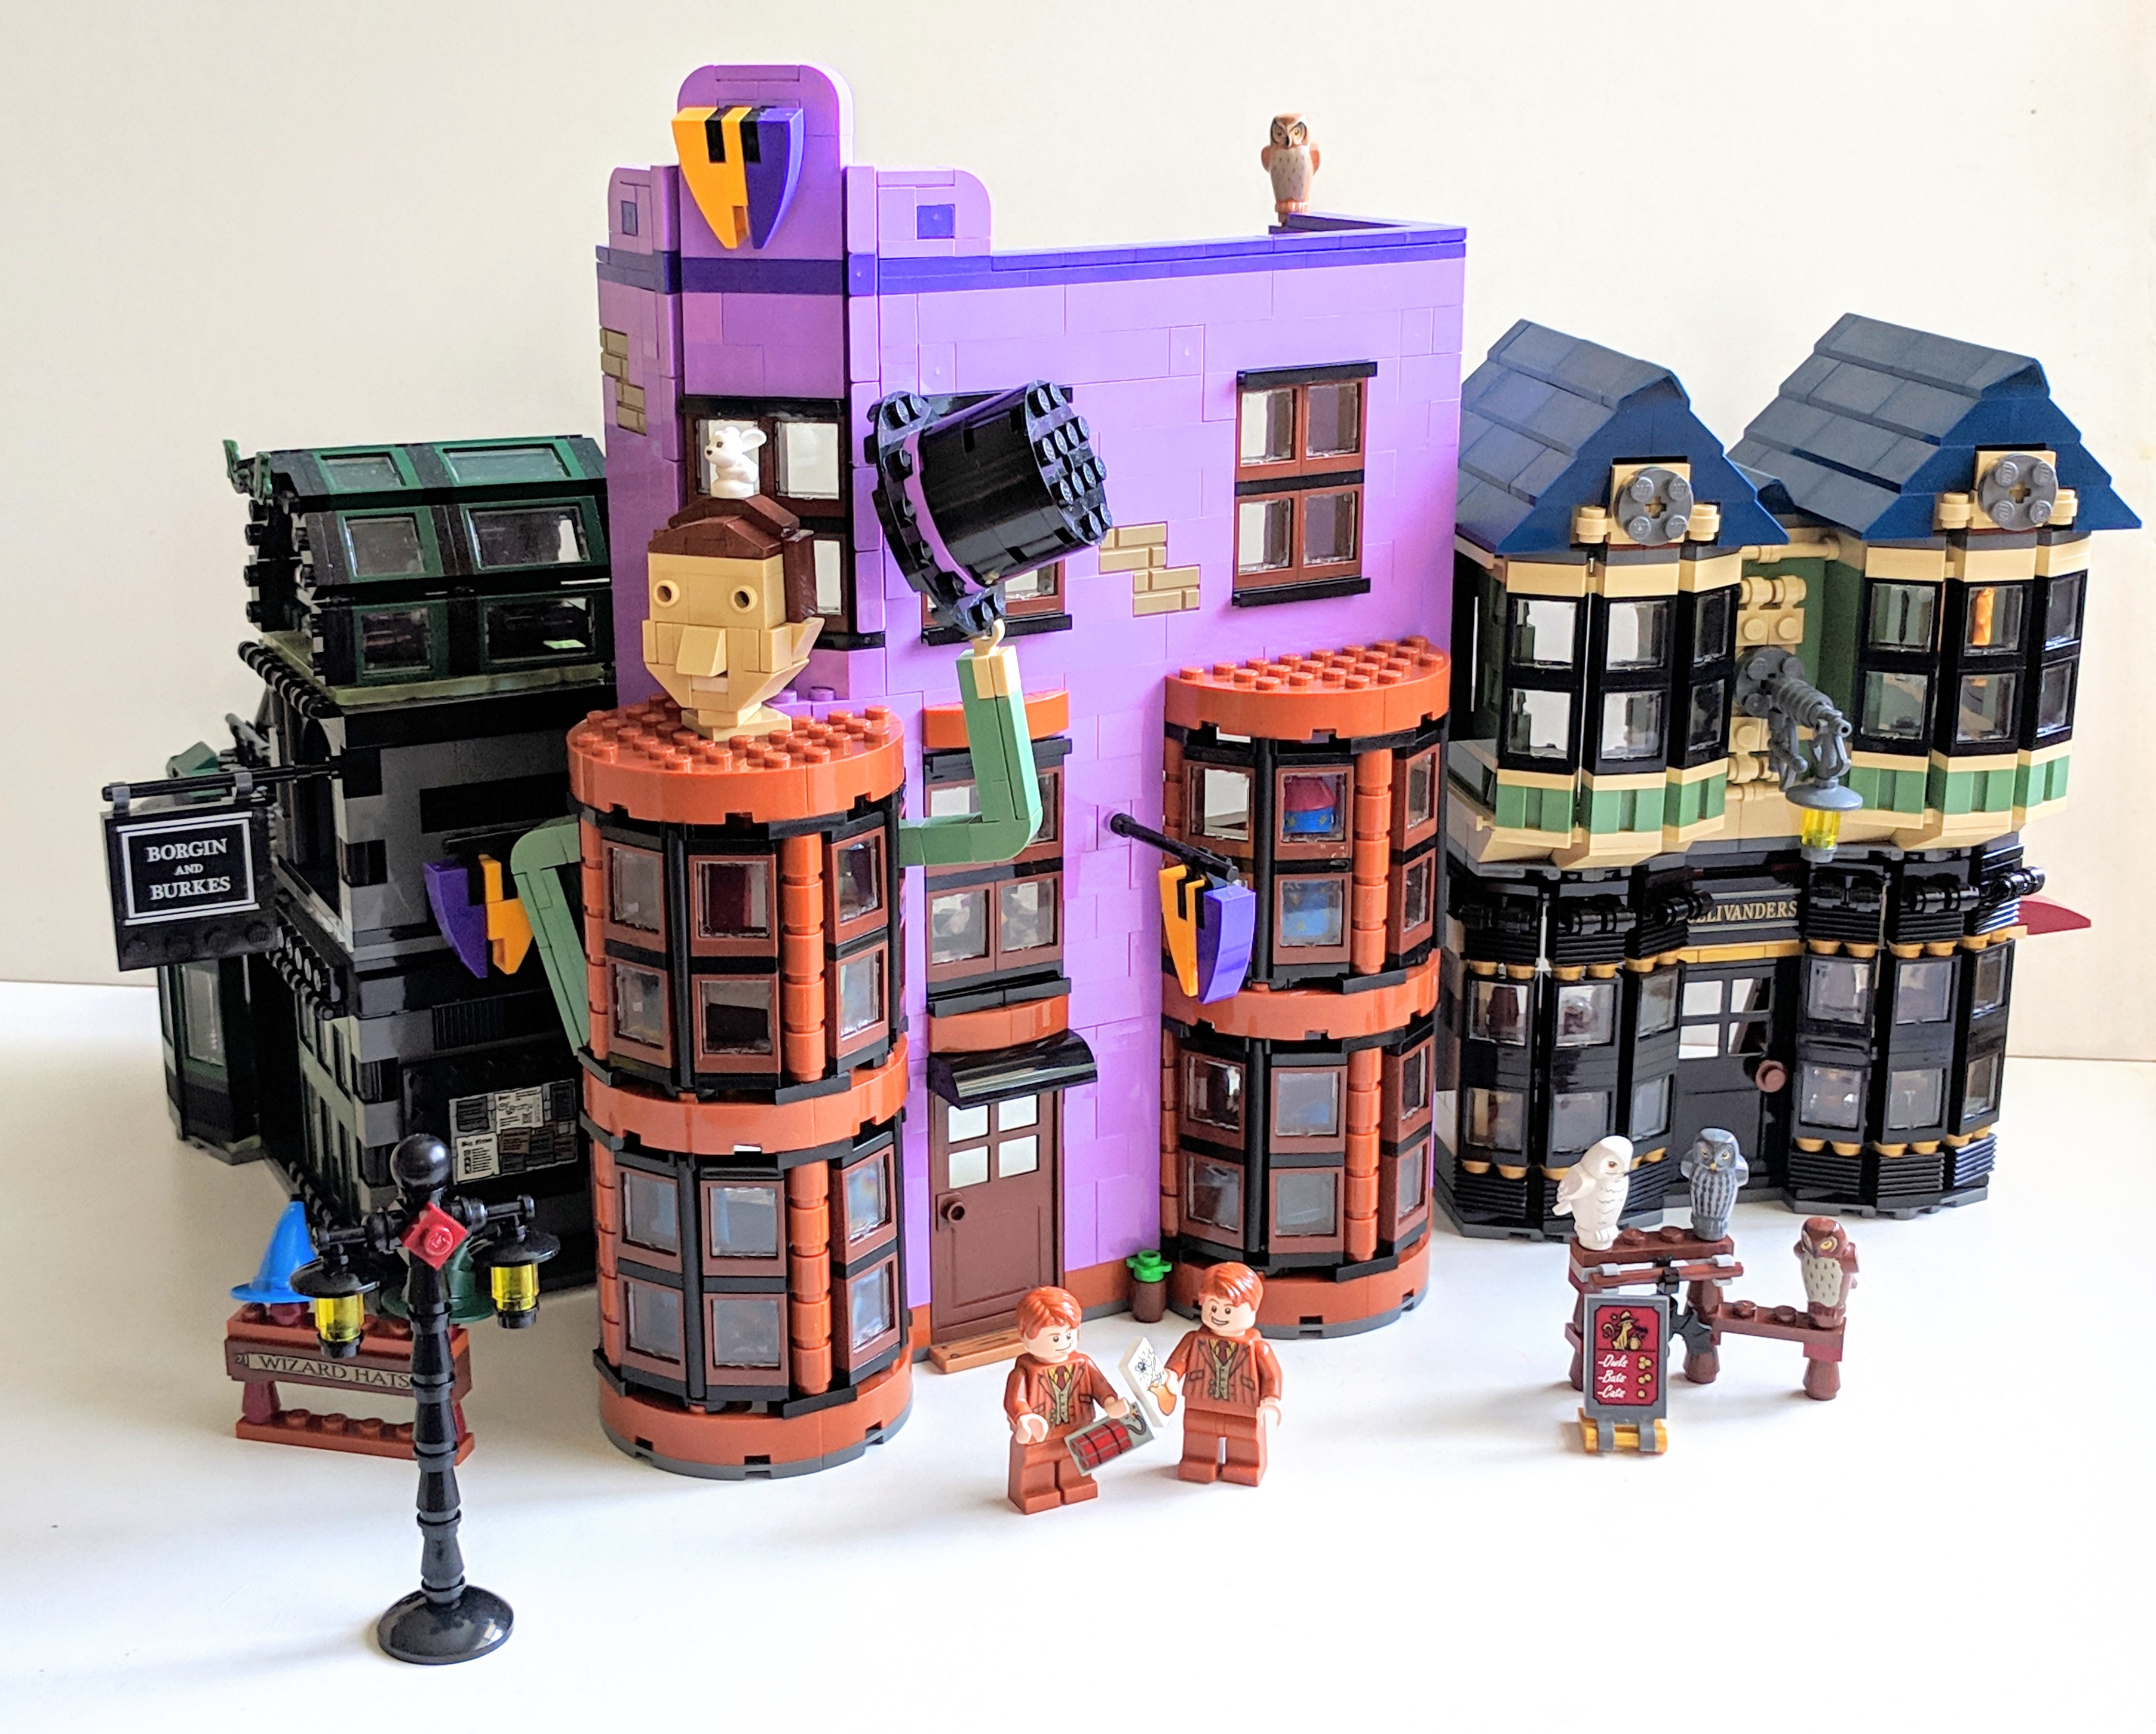 Weasley S Wizard Wheezes Blockwarts A Lego Harry Potter Fan Site